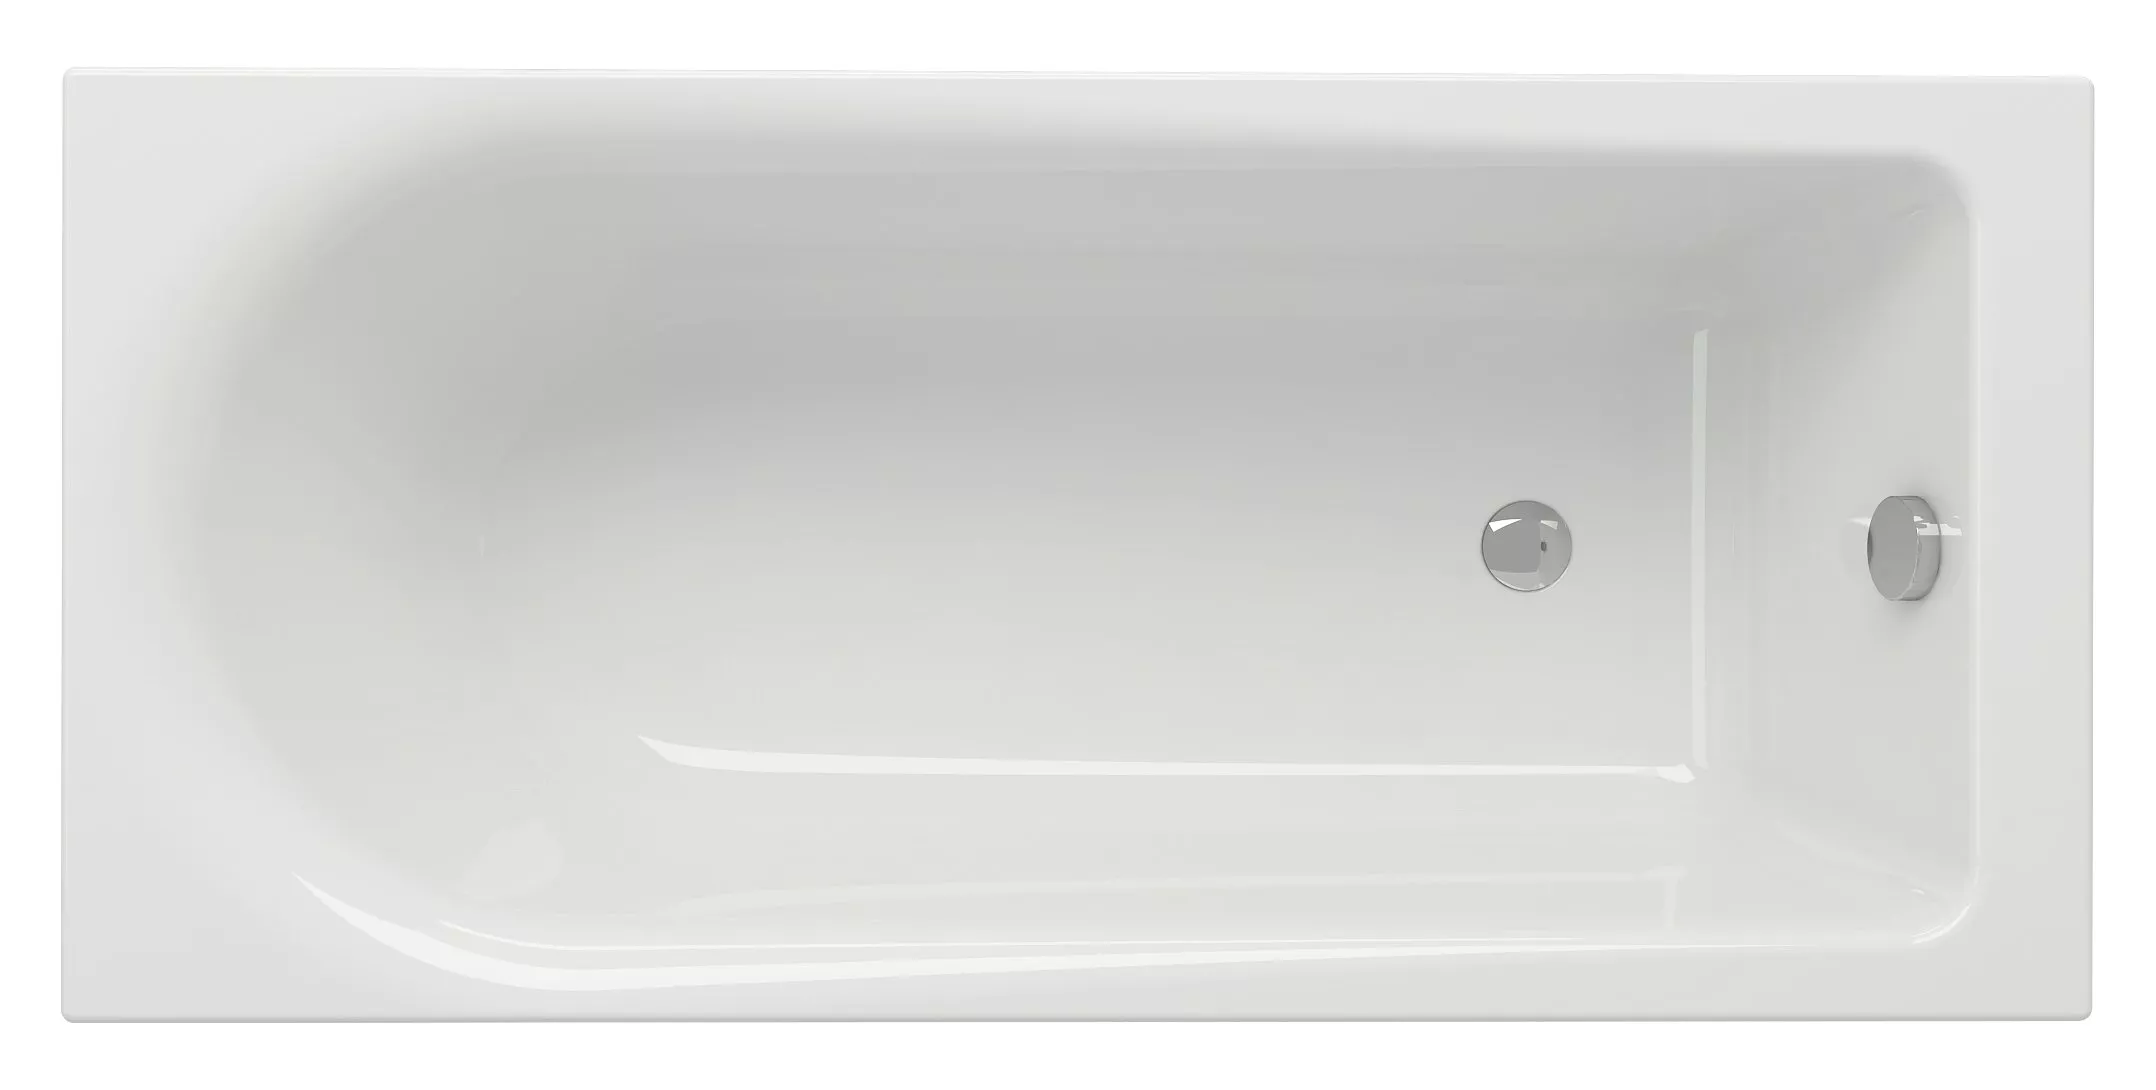 Акриловая ванна Cersanit Flavia 150, цвет белый WP-FLAVIA*150 - фото 1